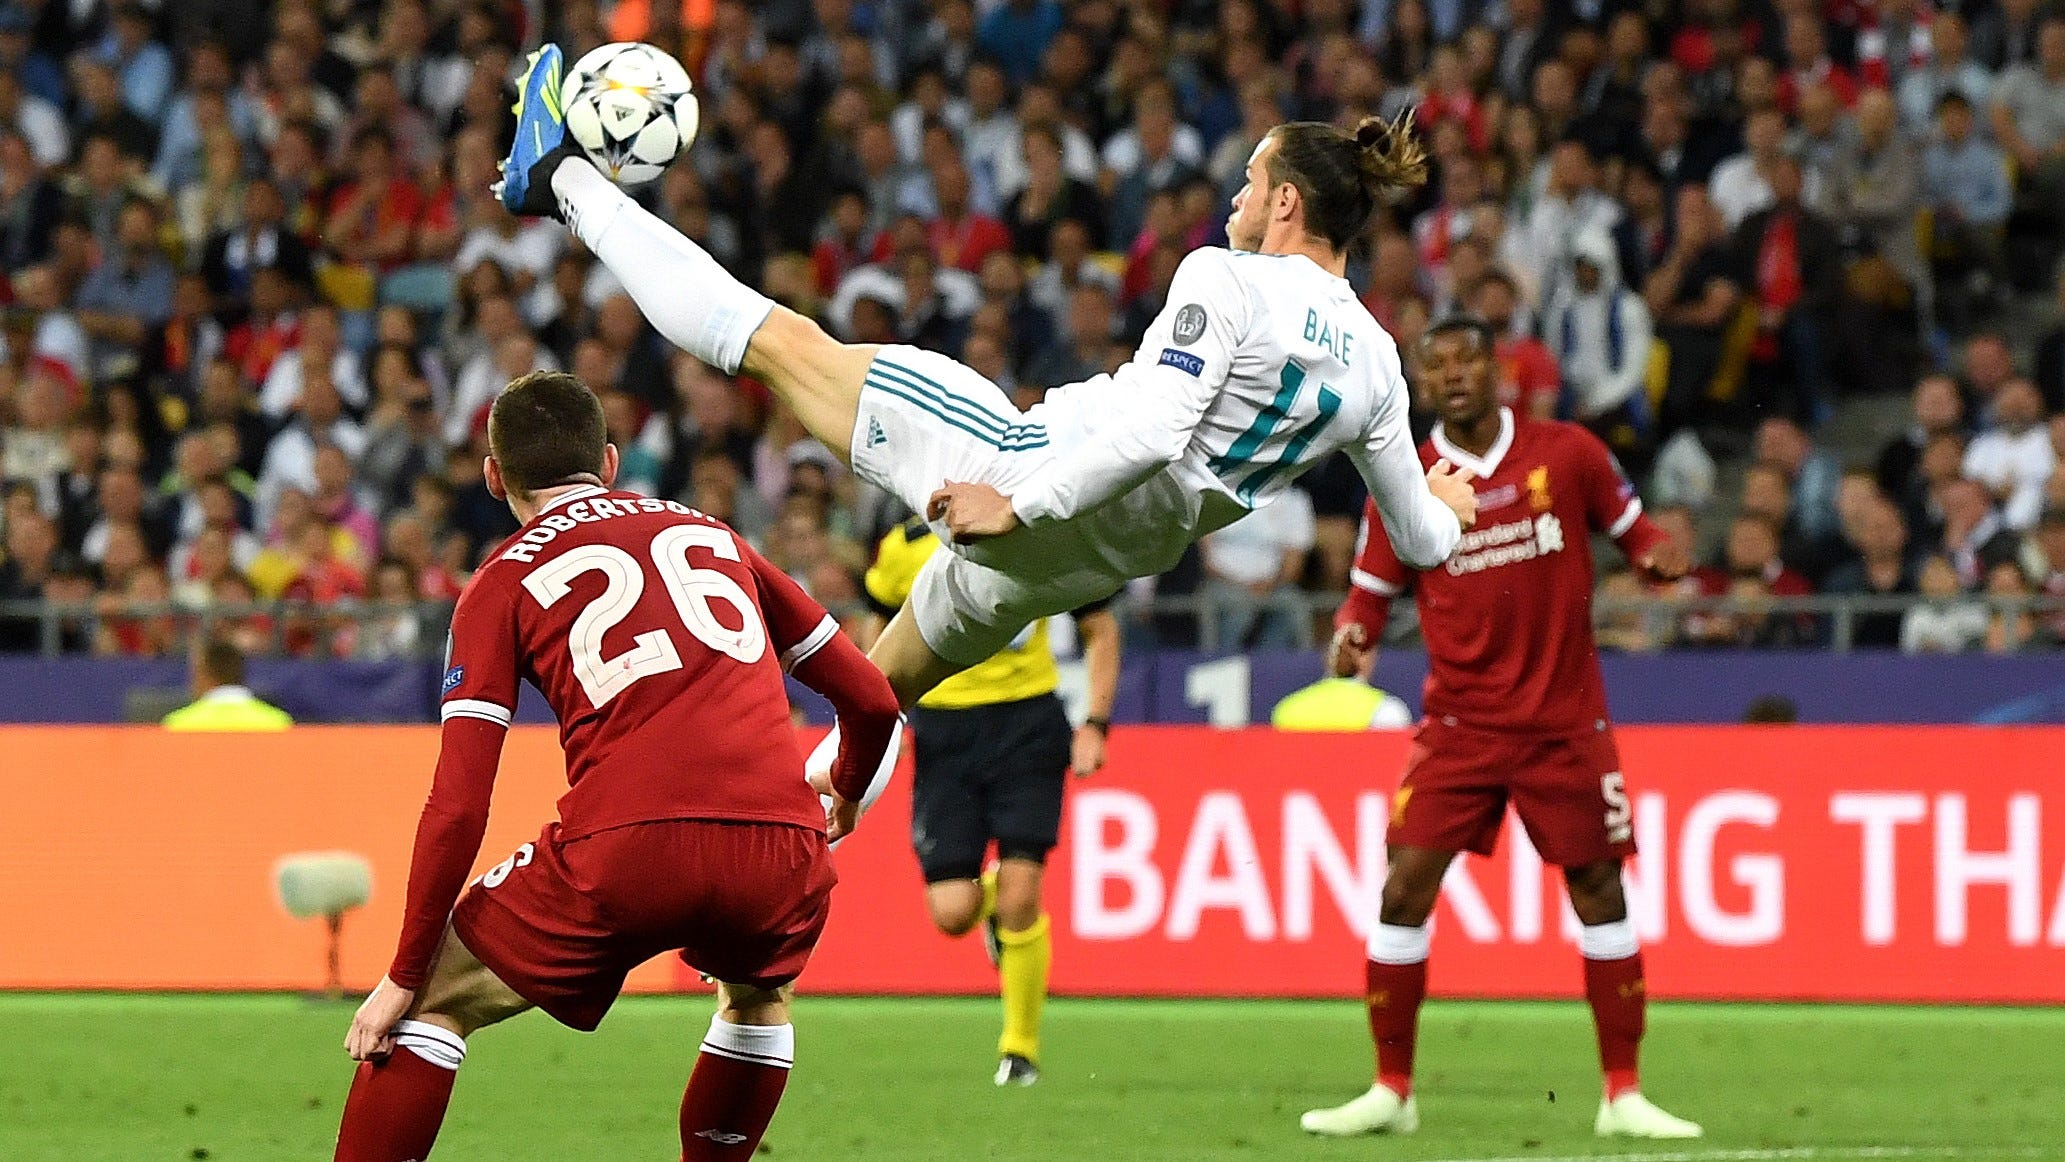 Азар назвал самый красивый гол в истории футбола. С ним сложно не  согласиться - Говорит Мадрид - Блоги - Sports.ru